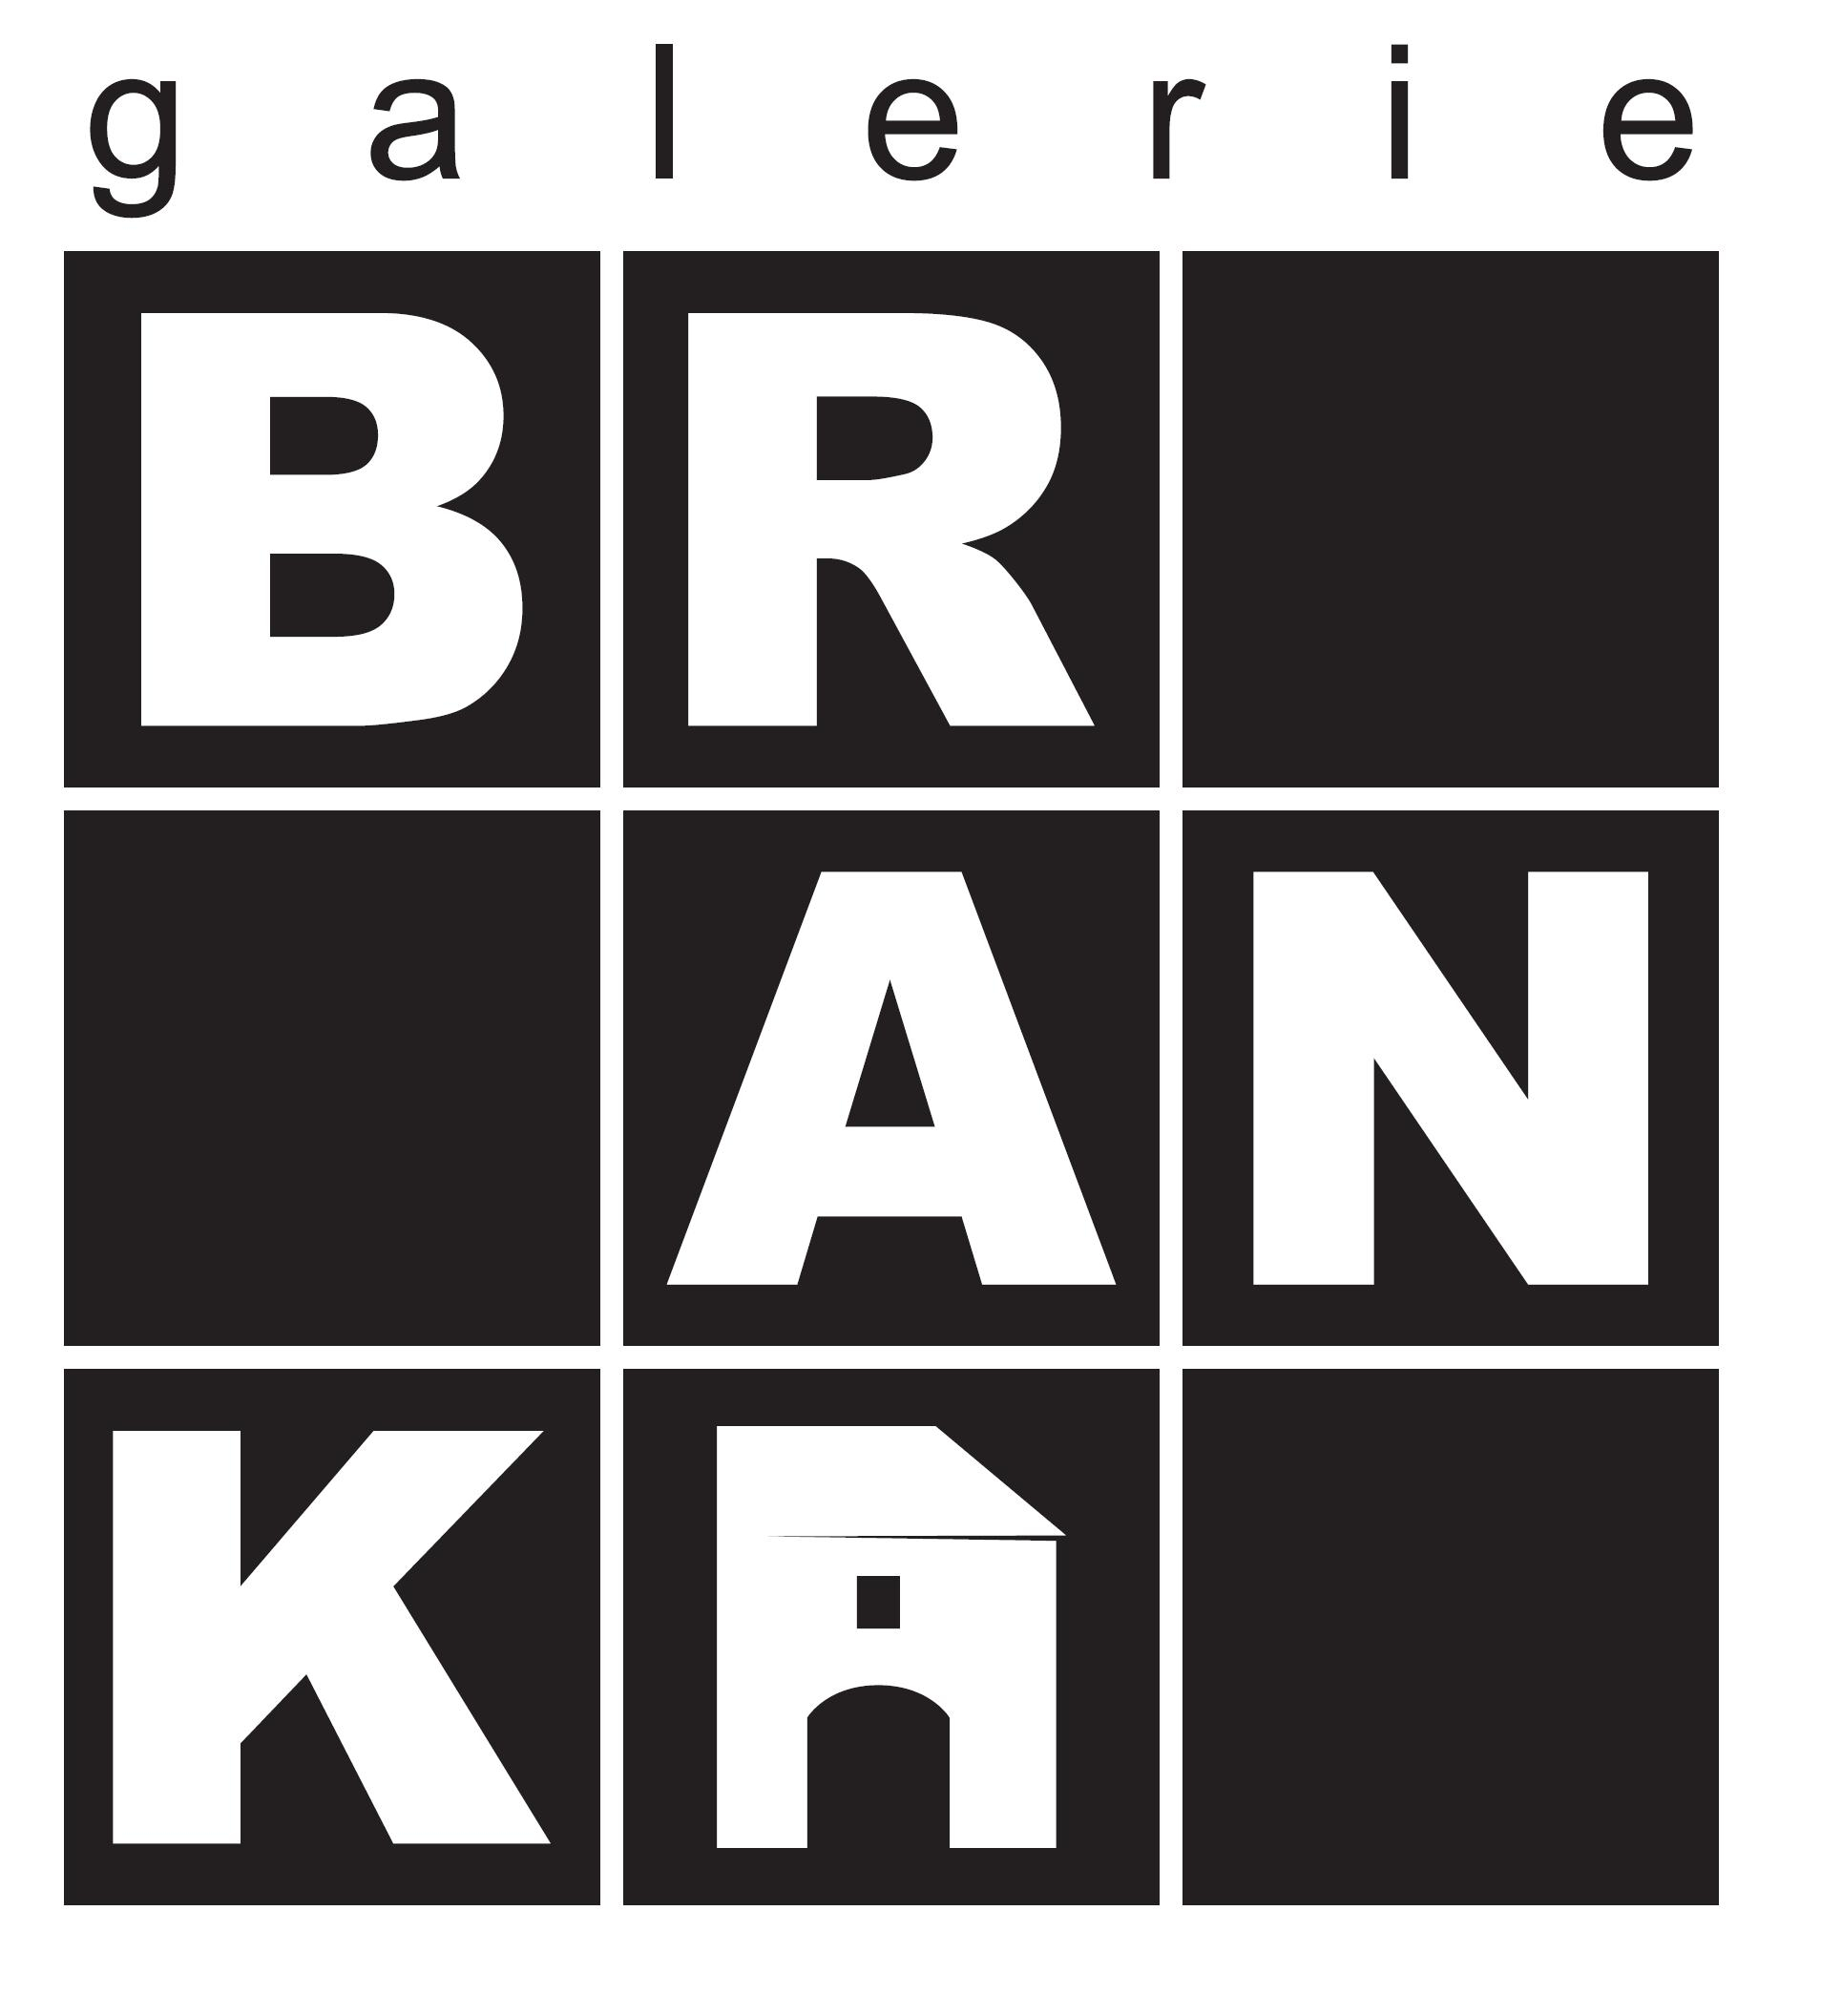 branka logo galerie